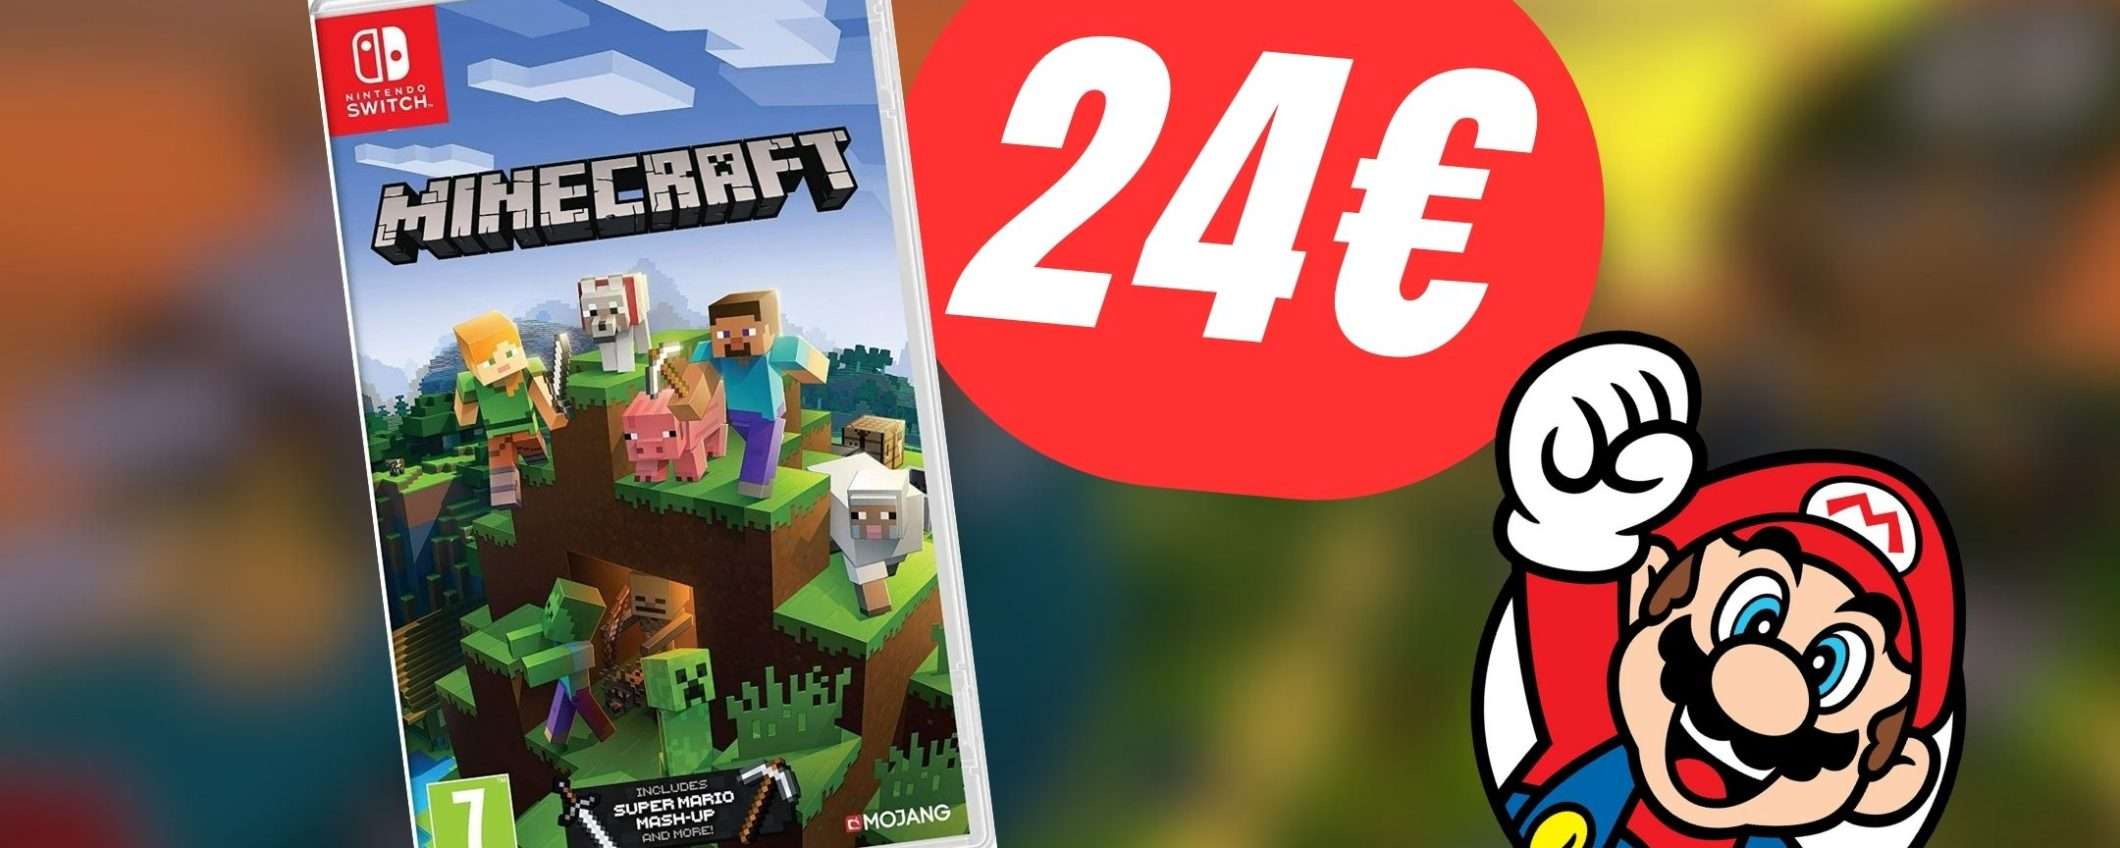 Minecraft: la versione per Nintendo Switch all'incredibile prezzo di 24€